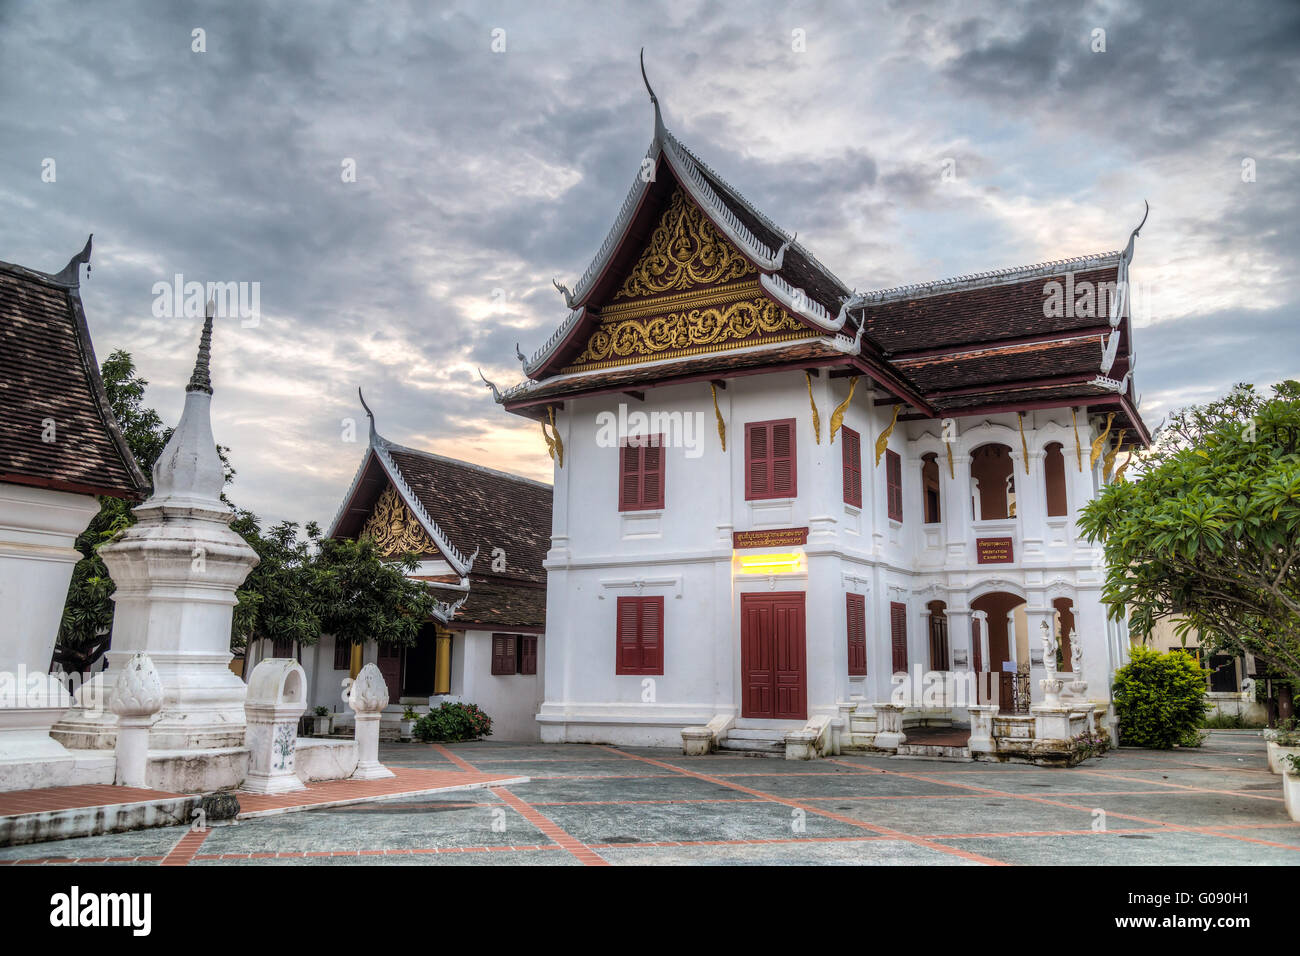 Wat Kili temple in Luang Prabang, Laos Stock Photo